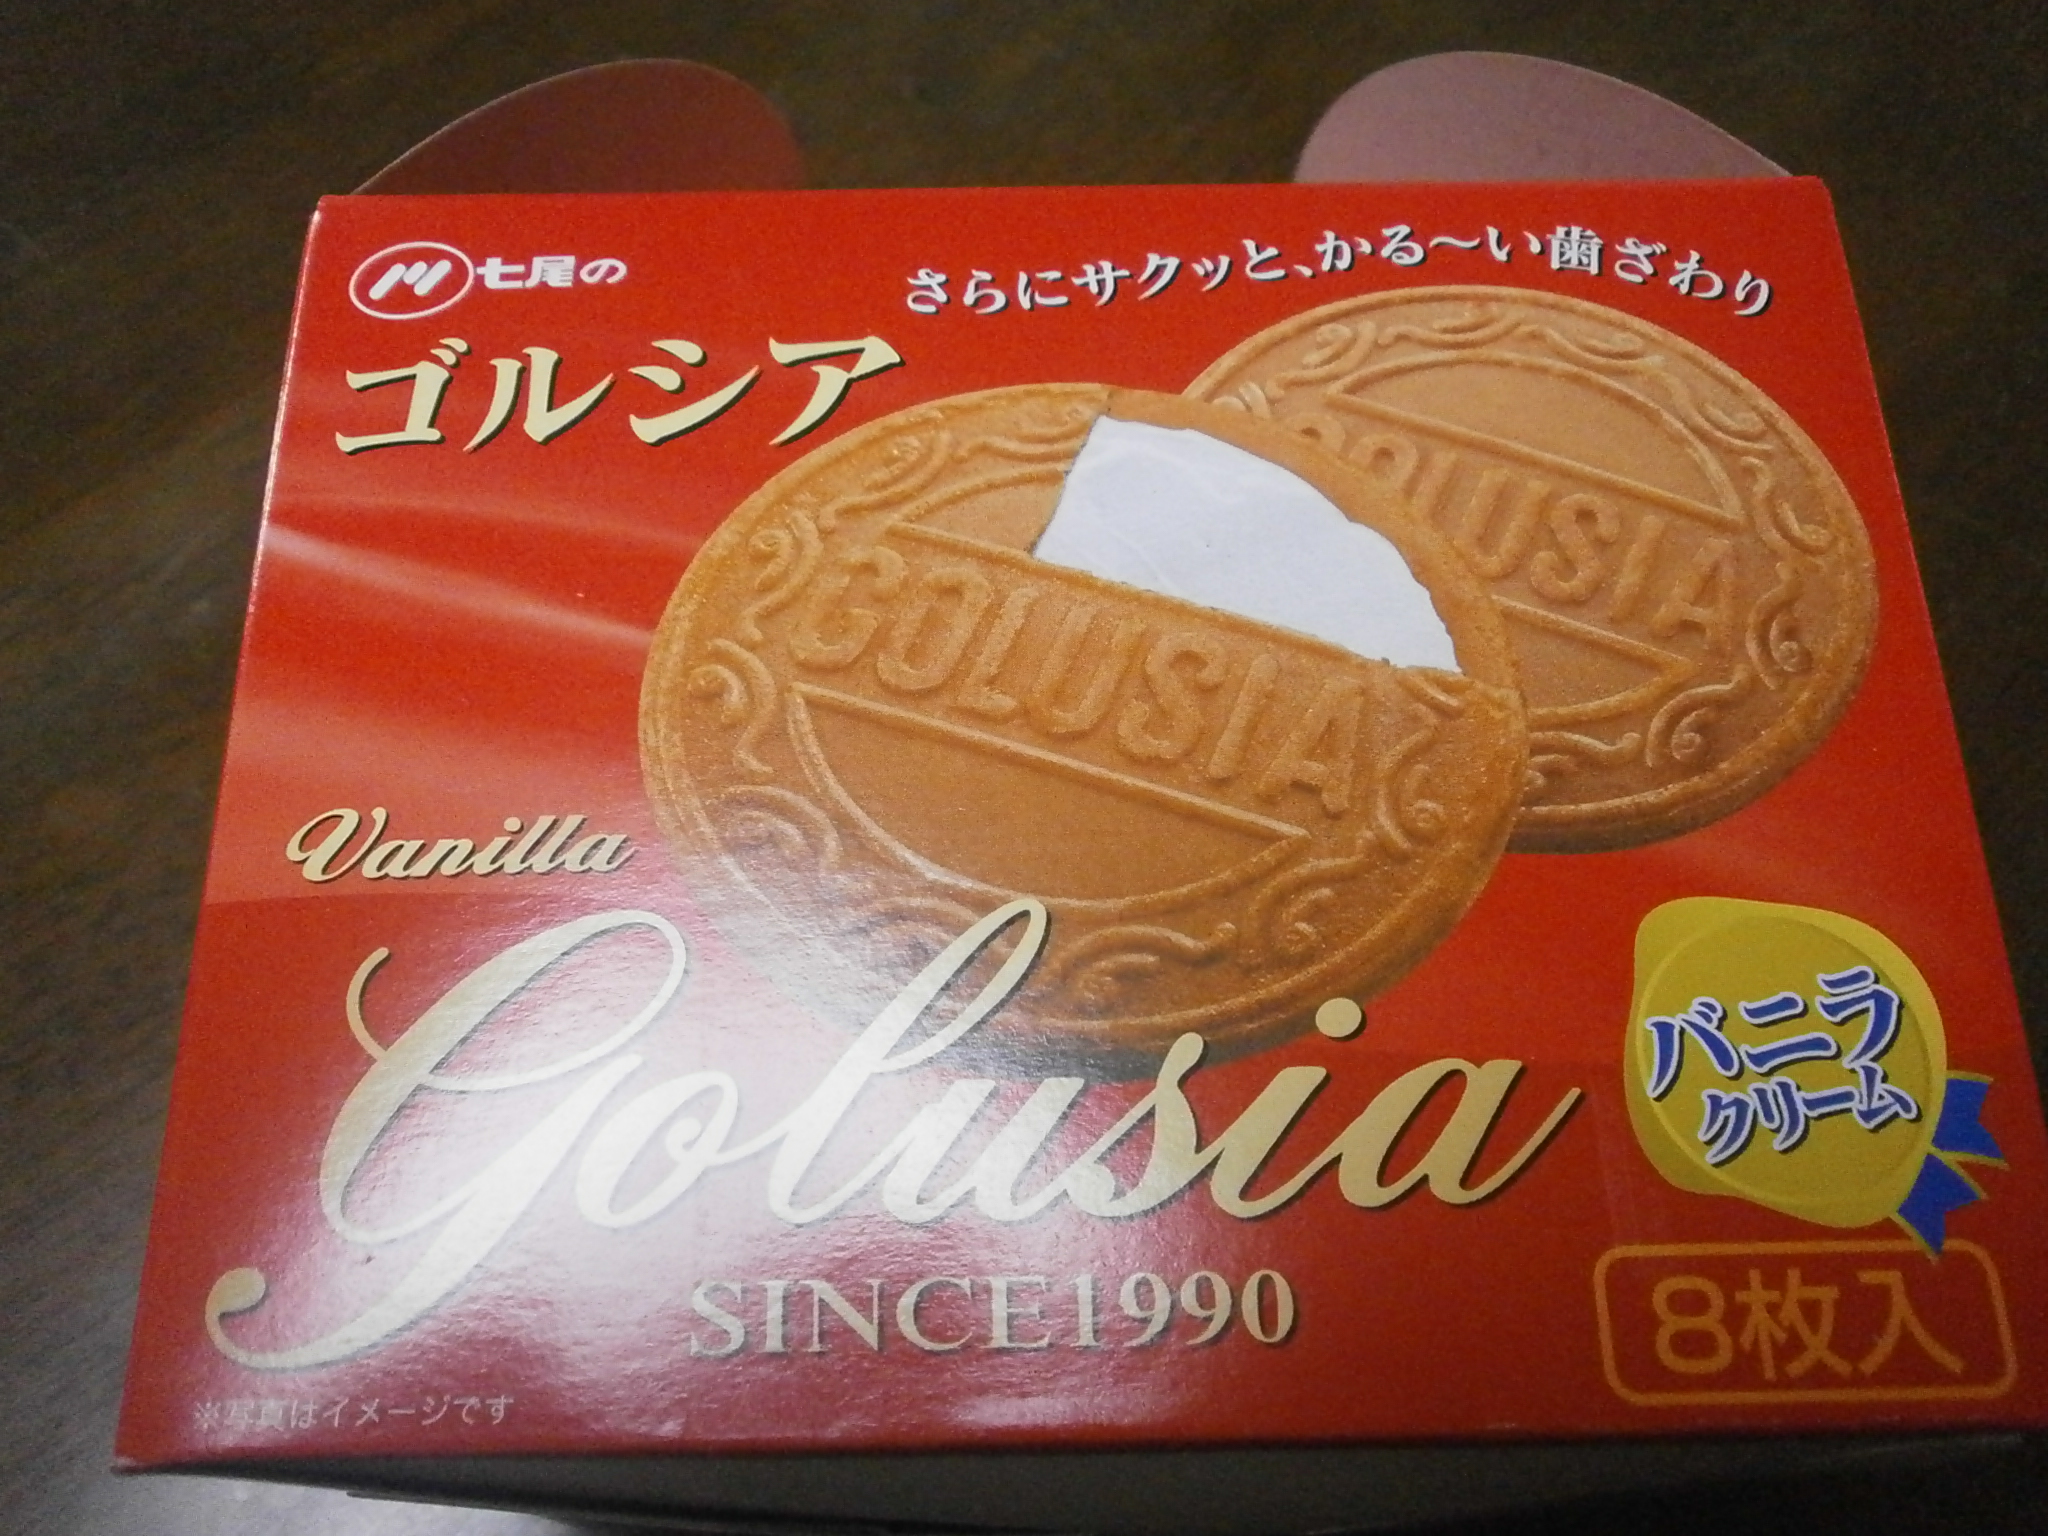 Gorushia (ванильным кремом)